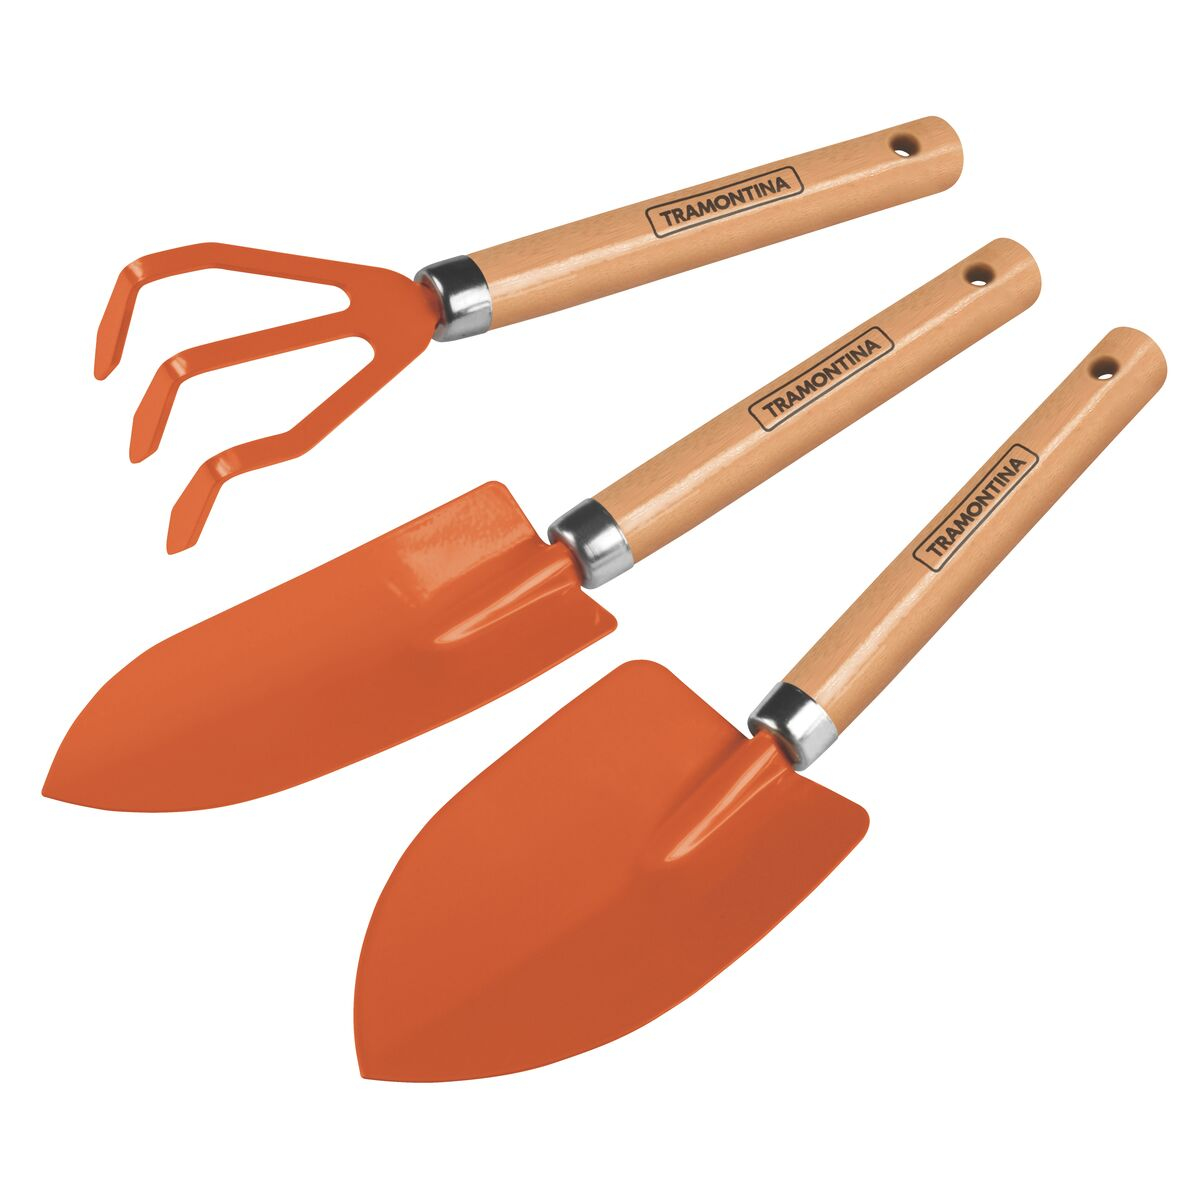 3 pieces garden tool set, wood handles, plastic package